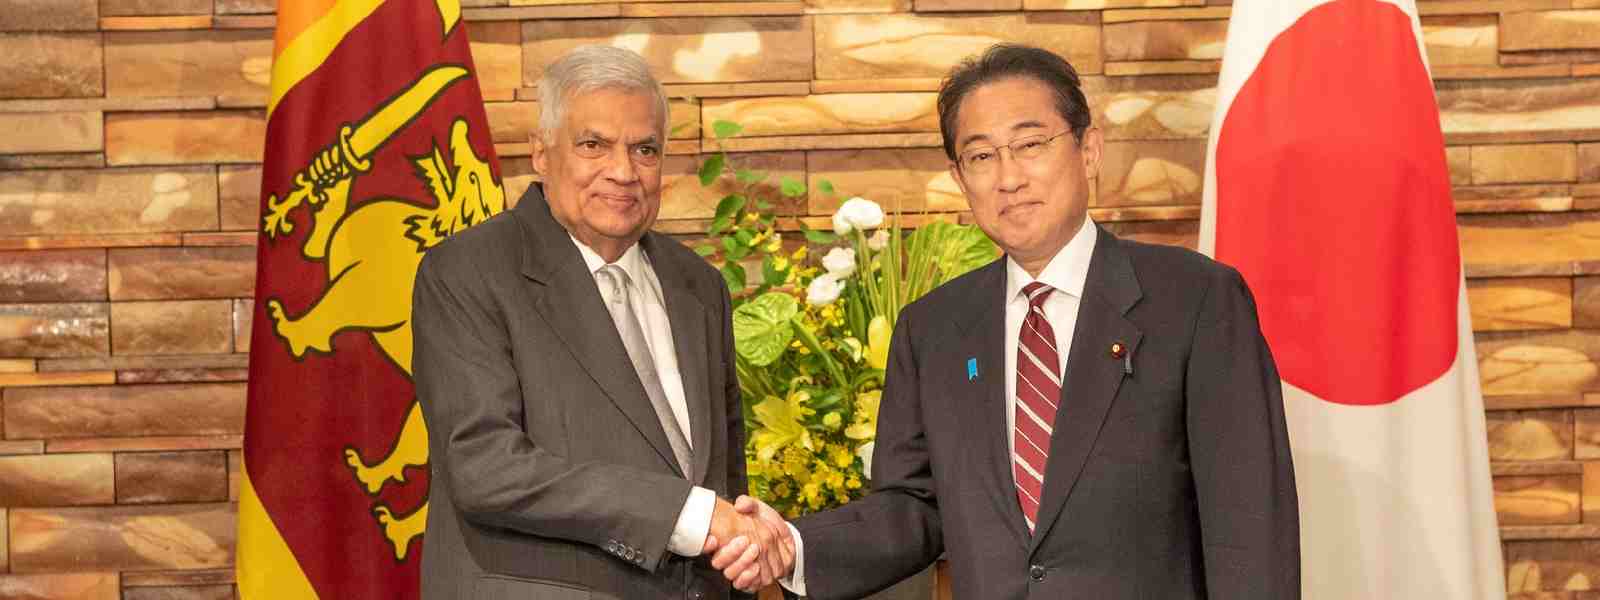 In Pictures: President Wickremesinghe’s meetings in Japan